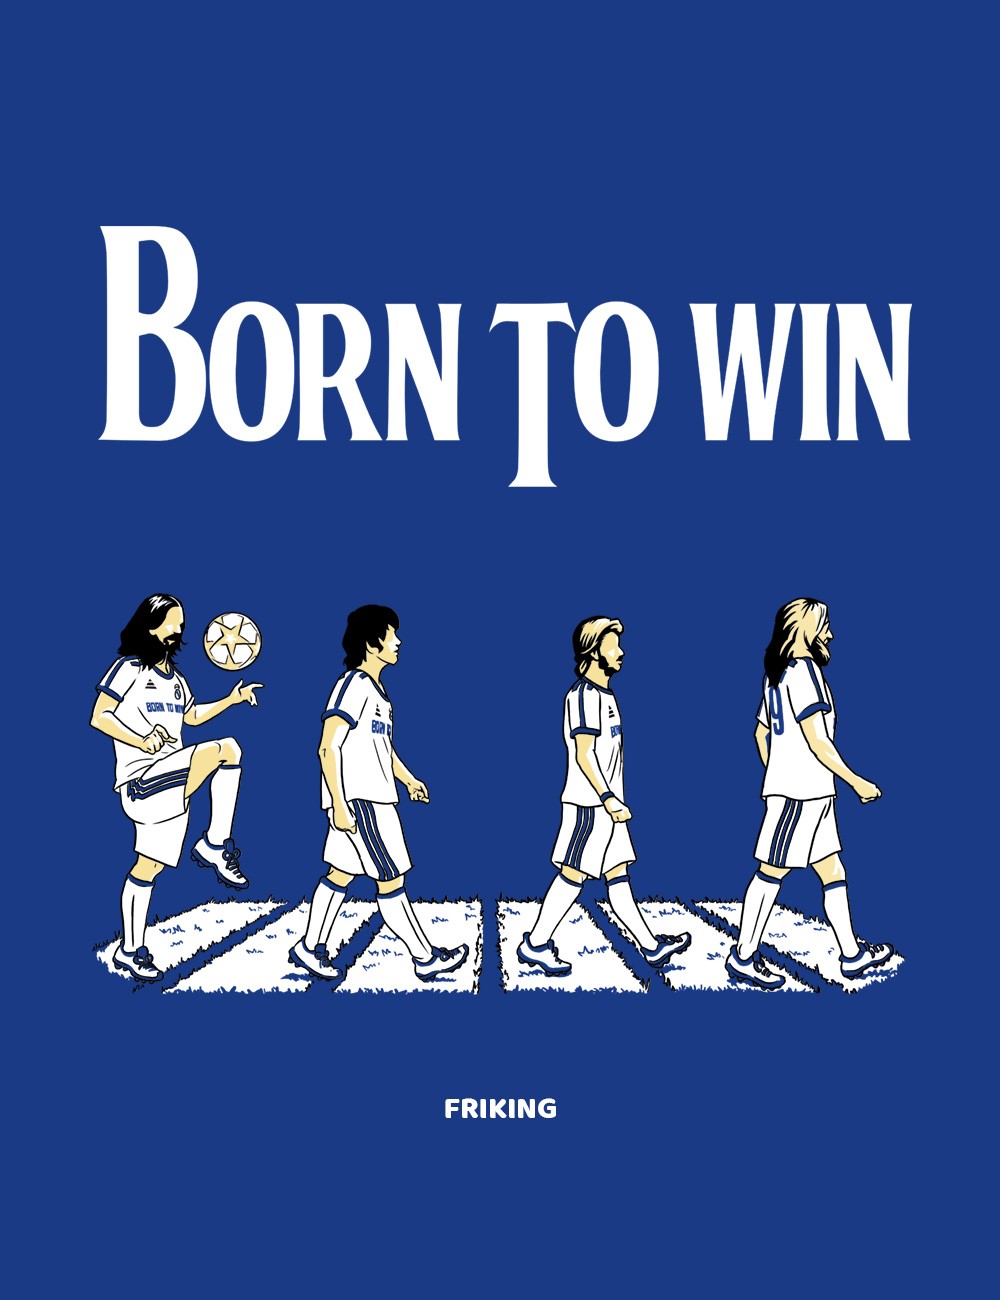 Born to win